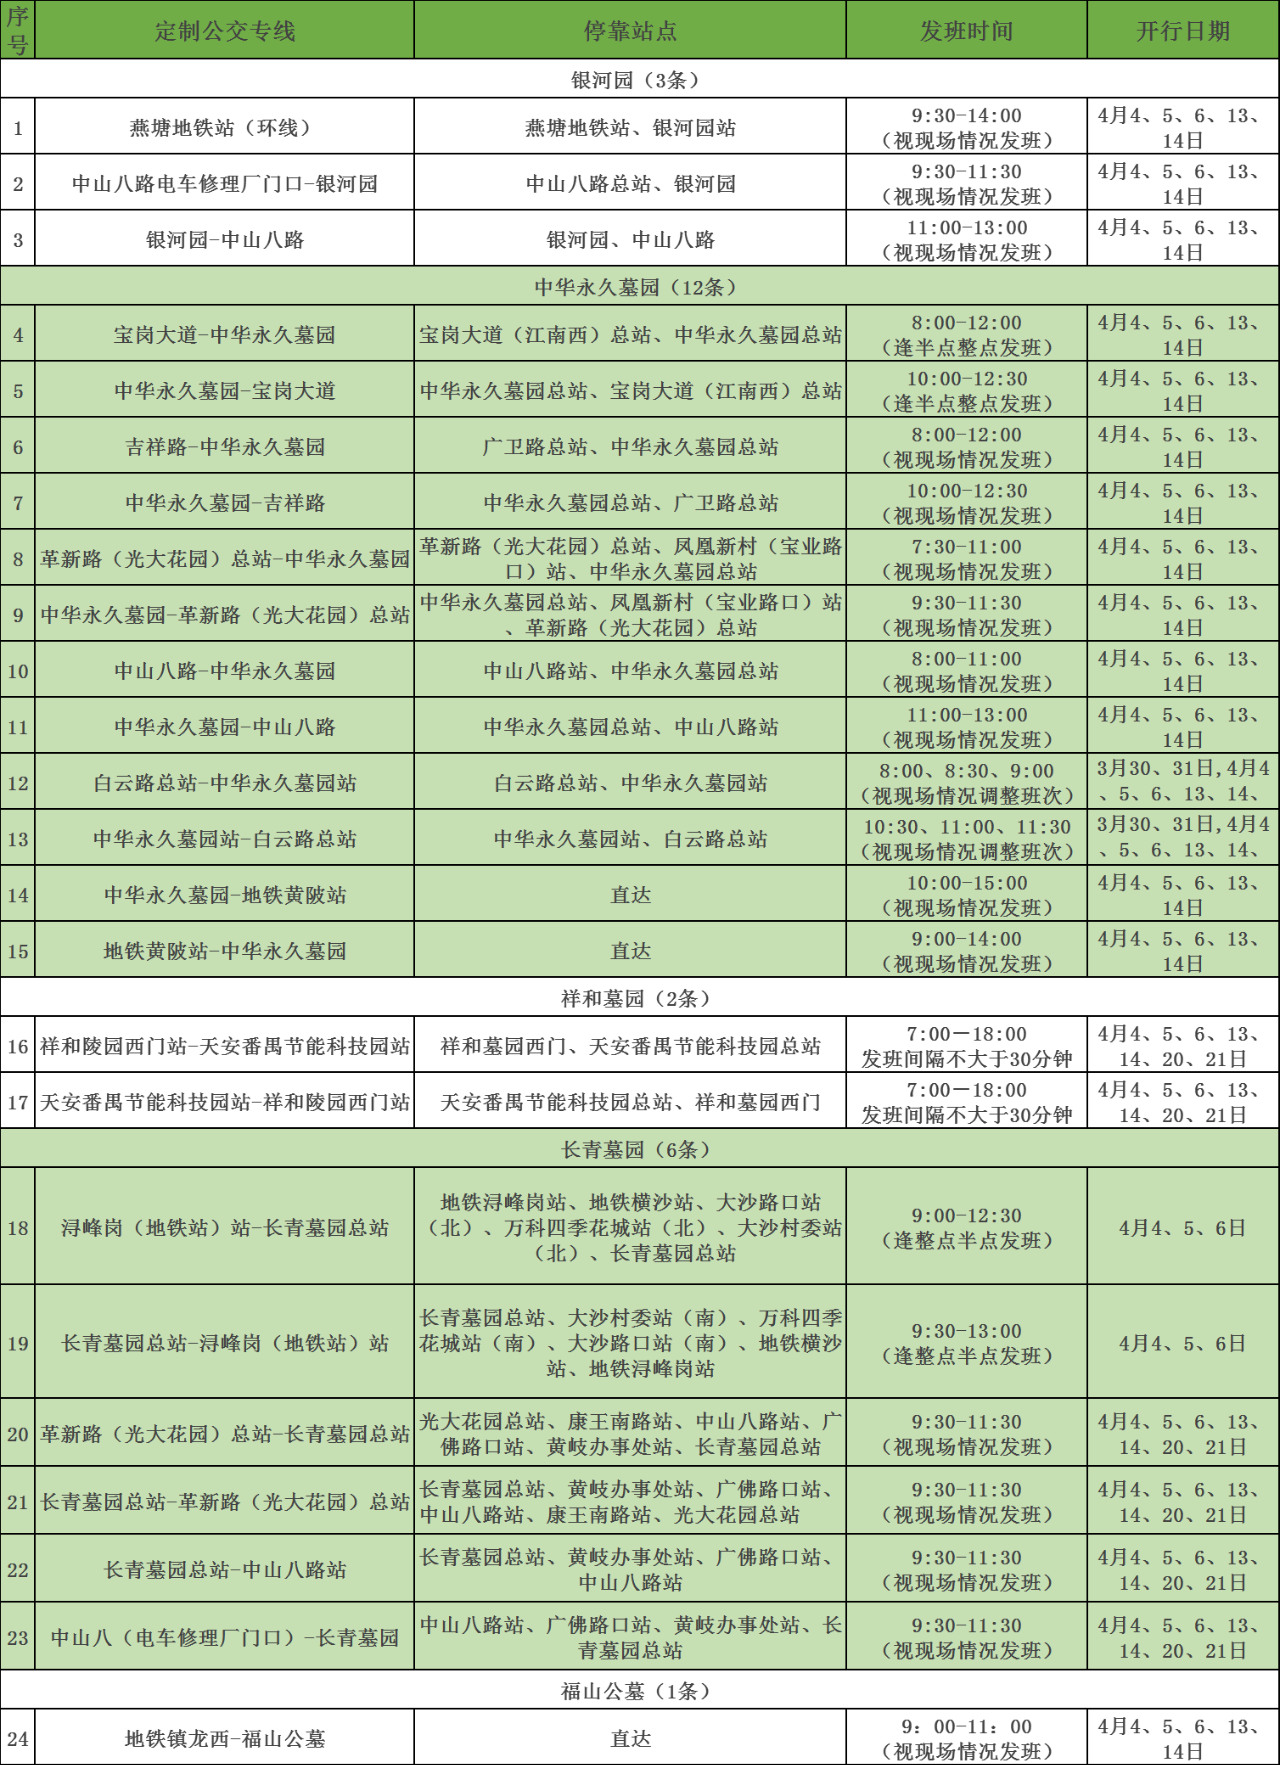 方便市民清明祭扫出行，广州开设24条定制公交专线